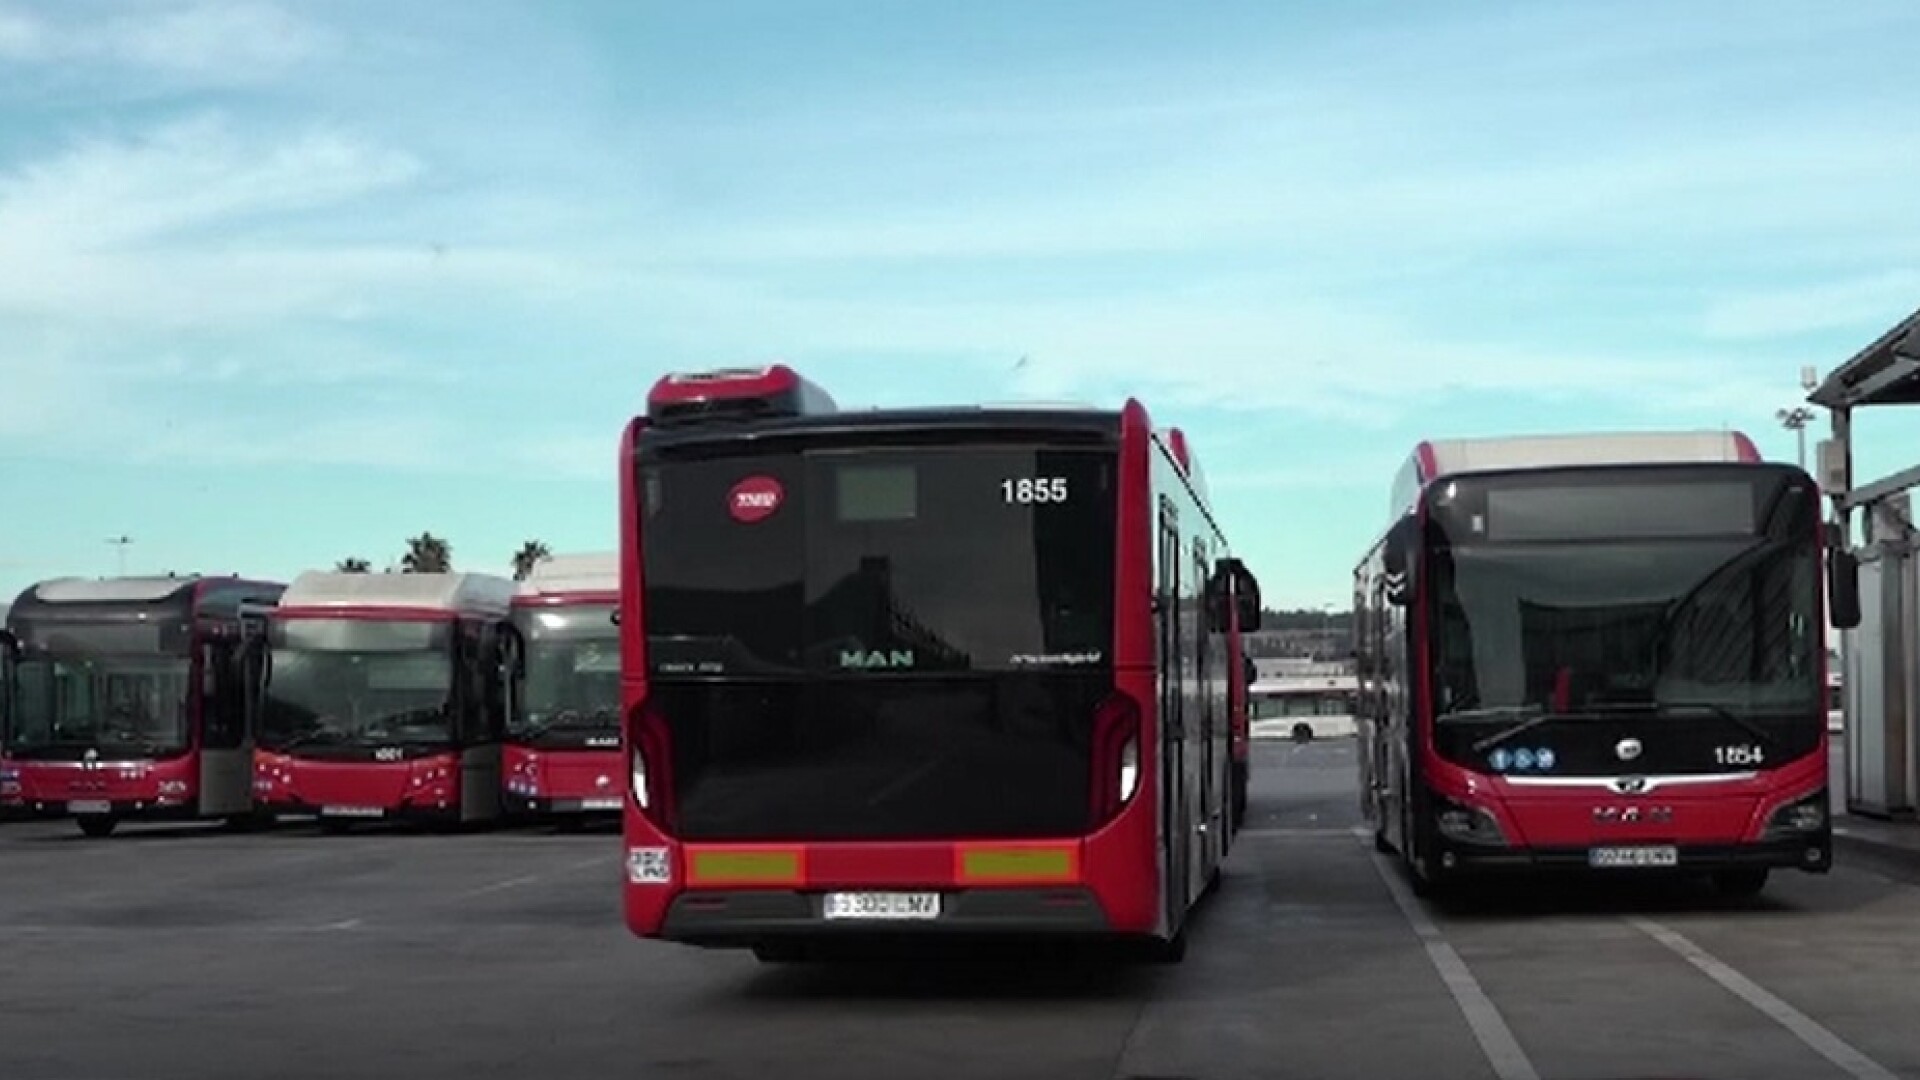 Proiect îndrăzneț în Barcelona. Autoritățile vor ca autobuzele să fie alimentate cu biometan